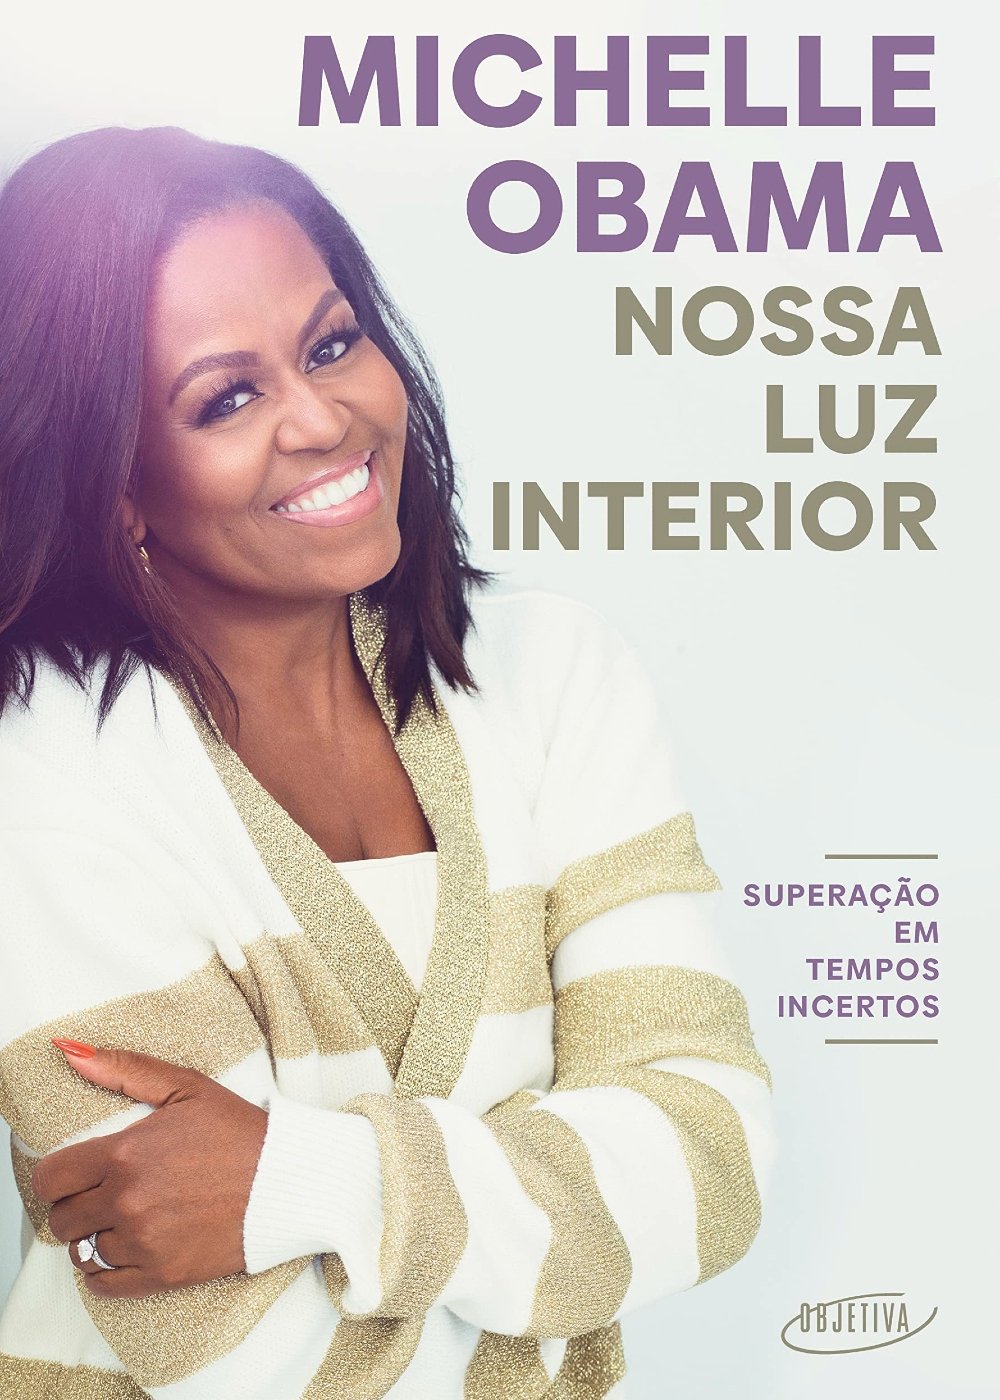 Michele Obama - Nossa Luz Interior - livro - livros de famosos - leitura - divulgação - https://stealthelook.com.br